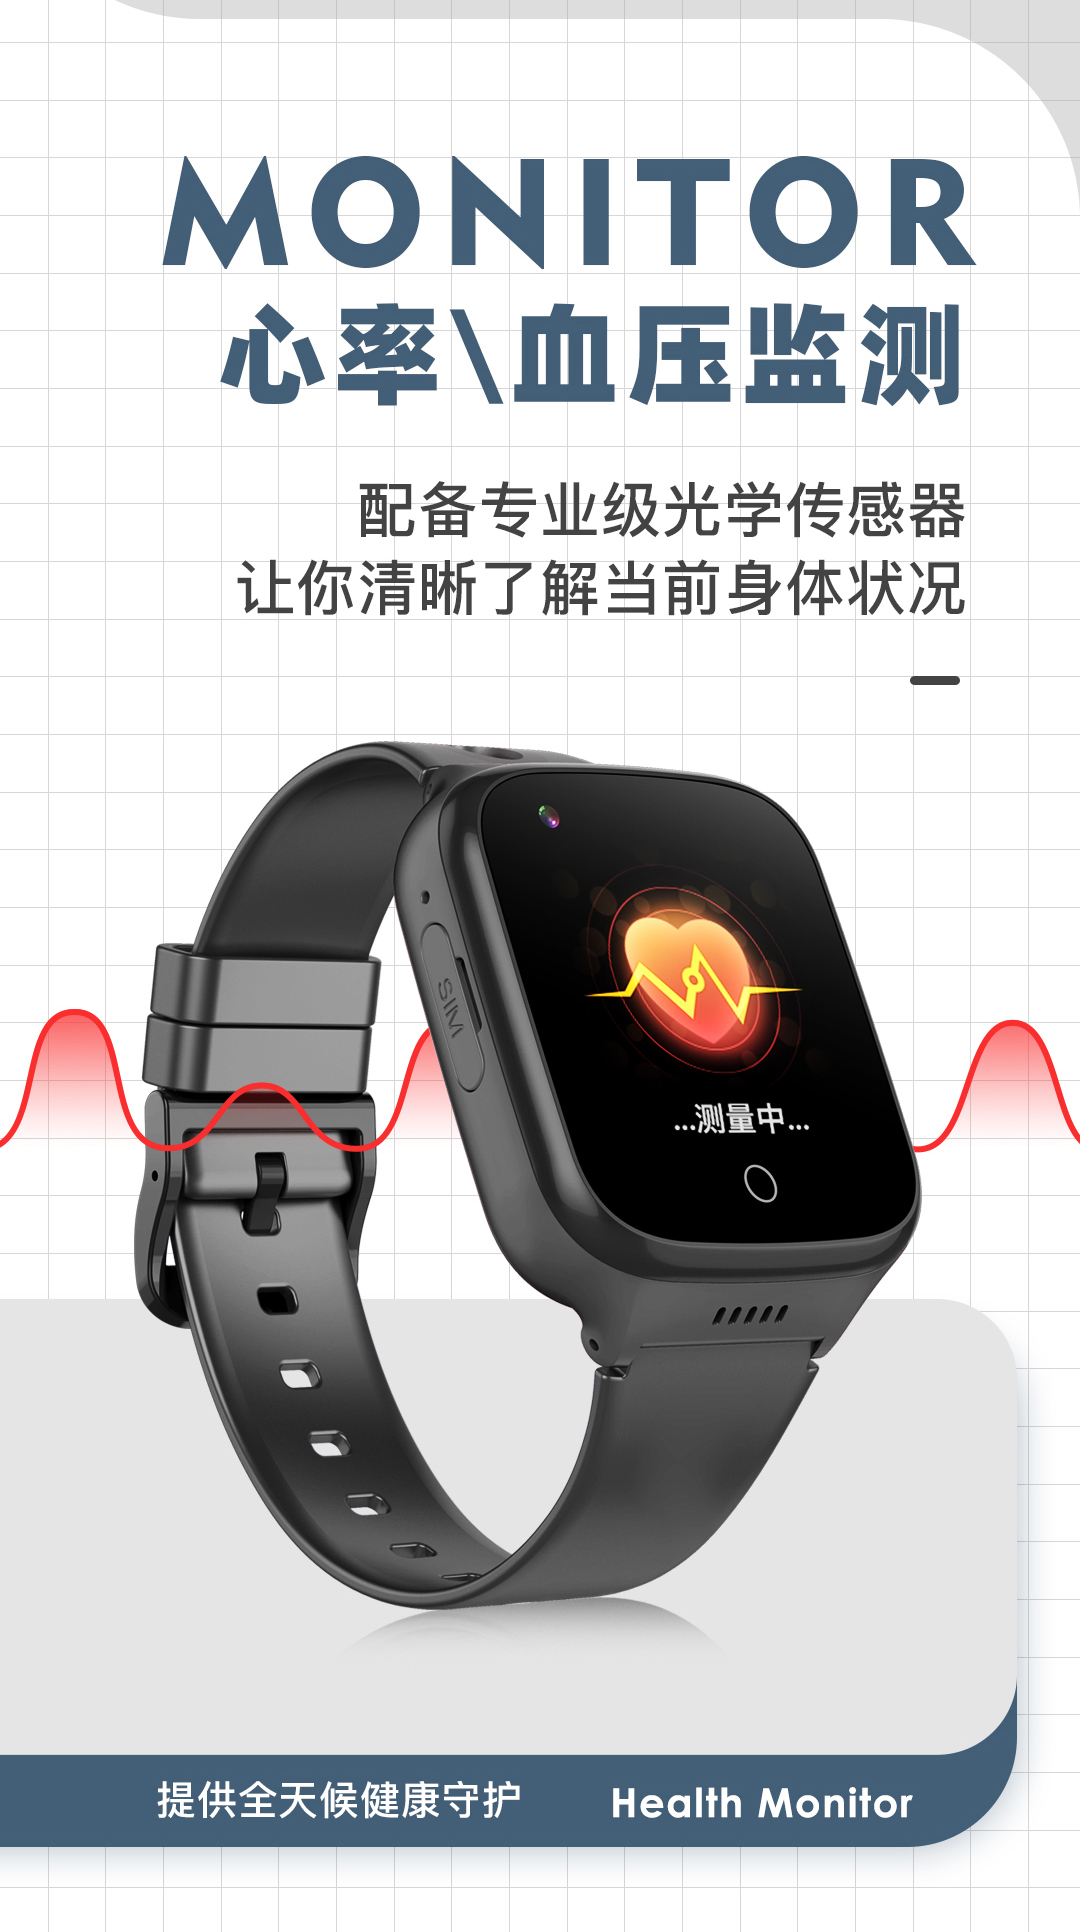 稳达时K9L性能款长待机心率血压血氧监测智能手表厂家货源推荐